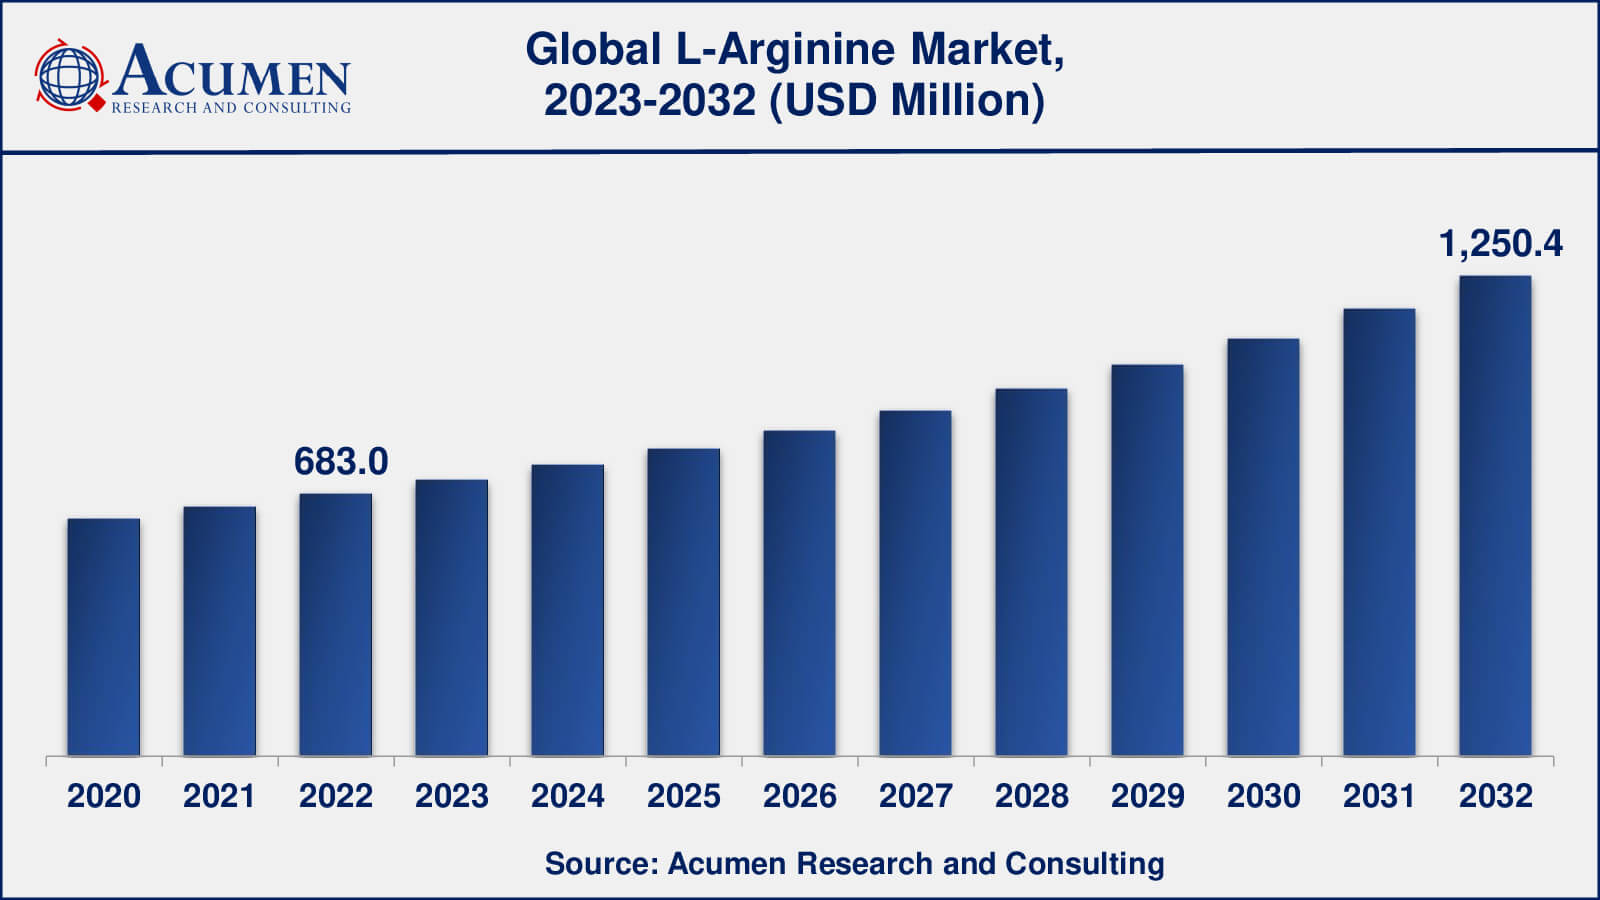 L-Arginine Market Analysis Period